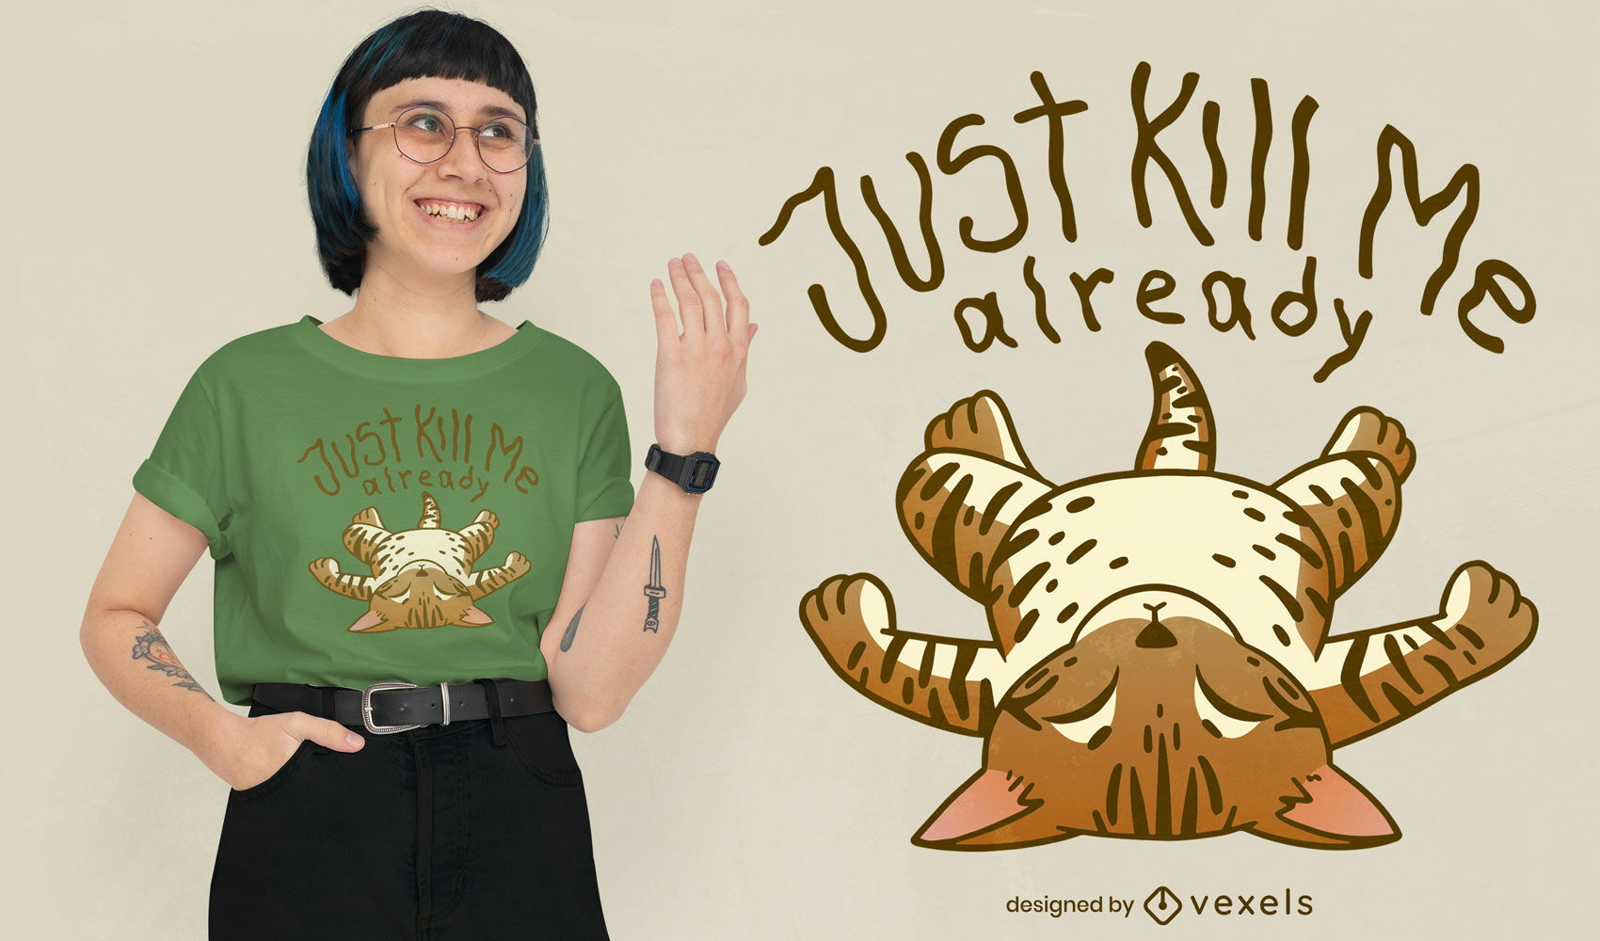 Sad cat quote t-shirt design